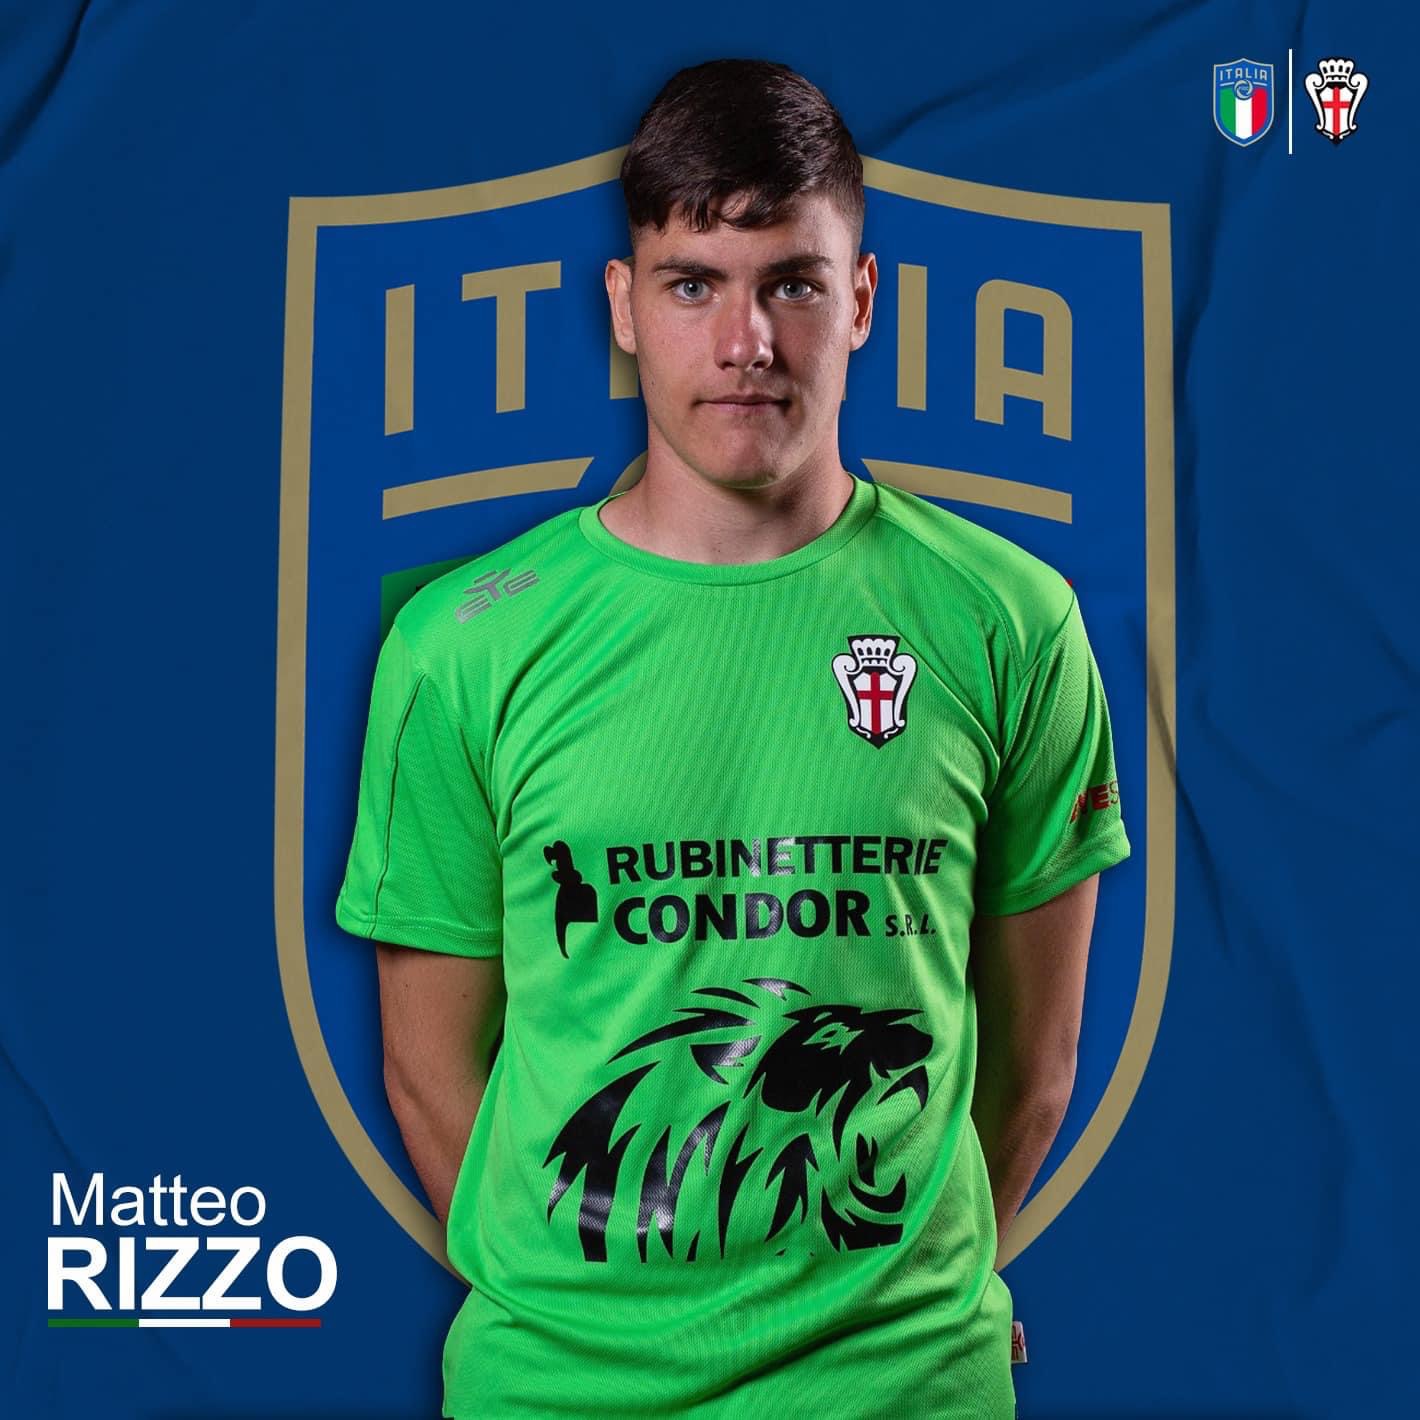 MATTEO RIZZO CONVOCATO IN NAZIONALE U19!